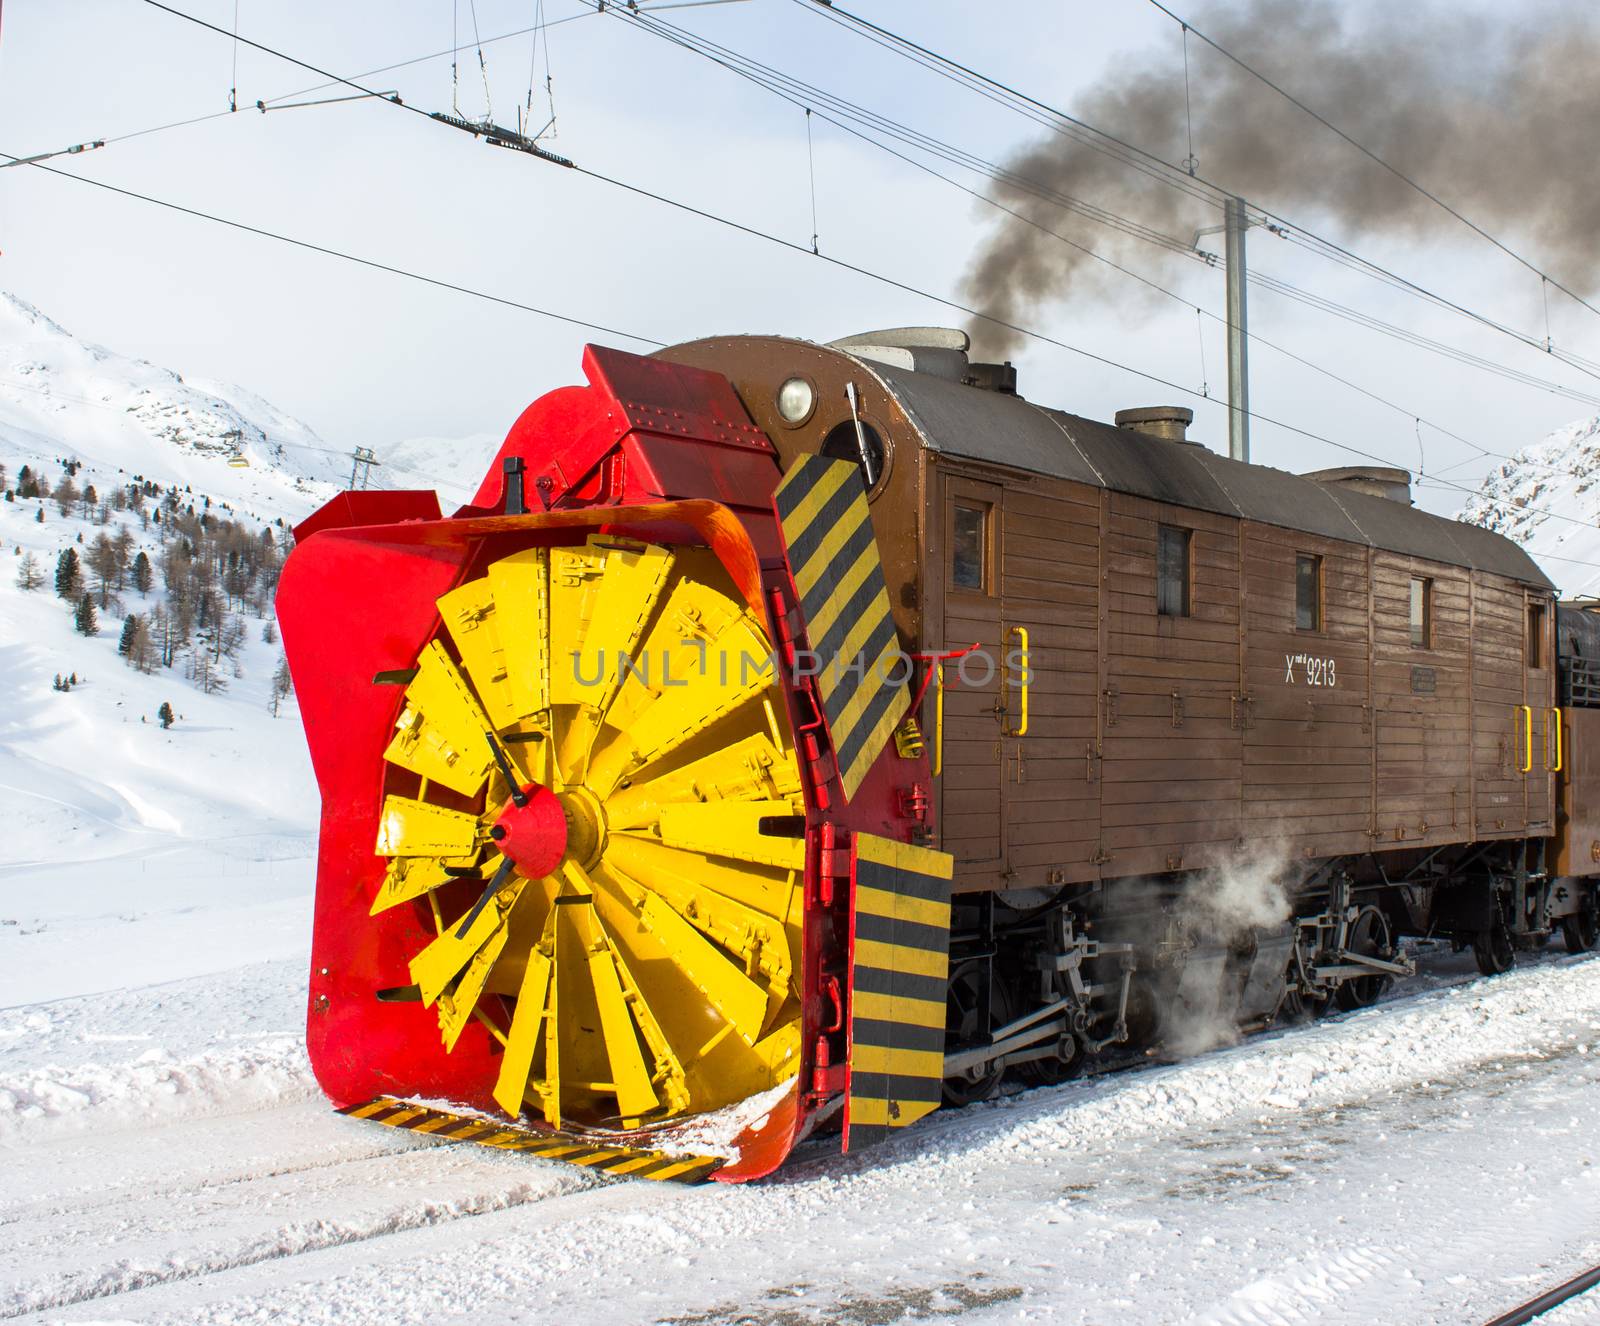 Snowplow steam, along the line of bernina in Swiss